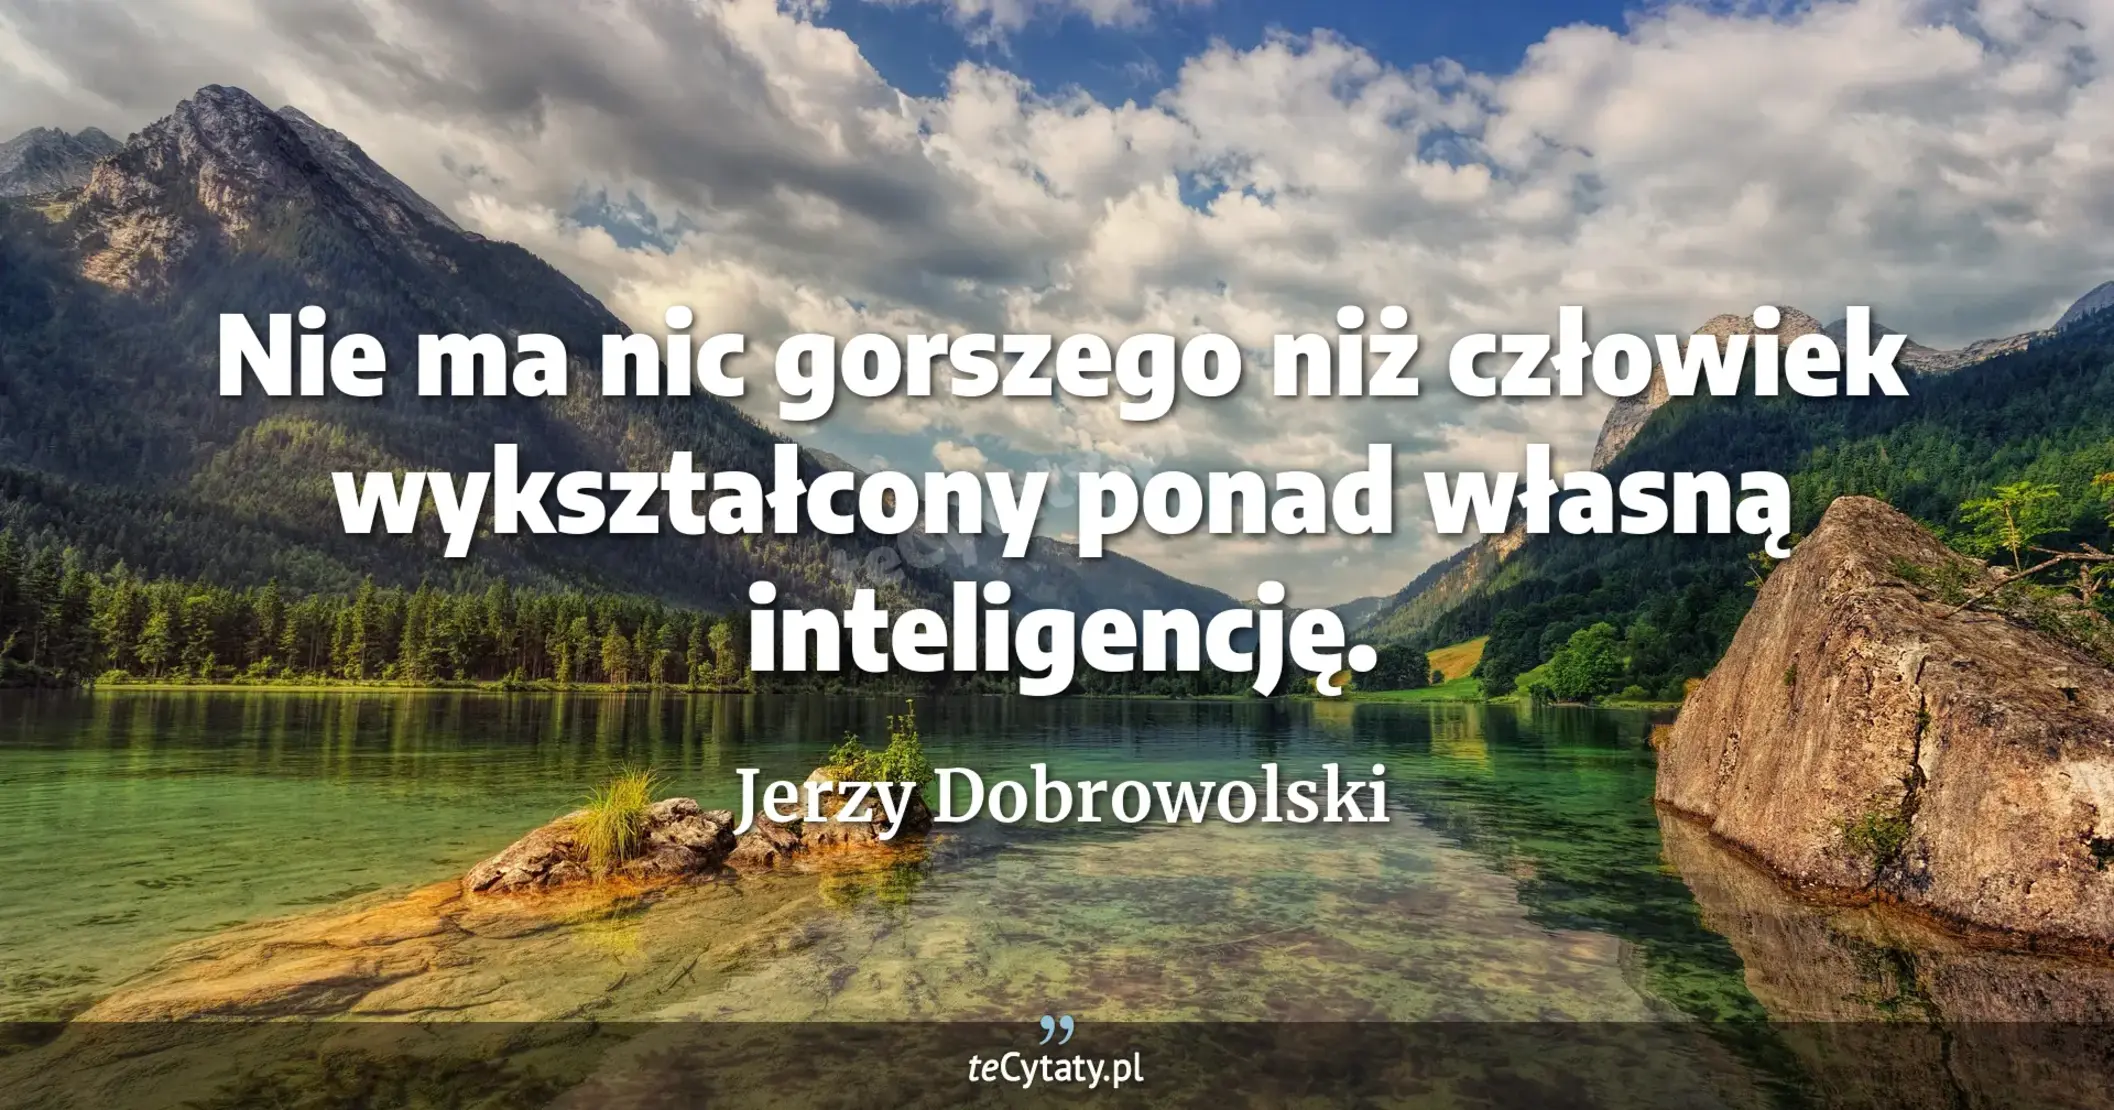 Nie ma nic gorszego niż człowiek wykształcony ponad własną inteligencję. - Jerzy Dobrowolski